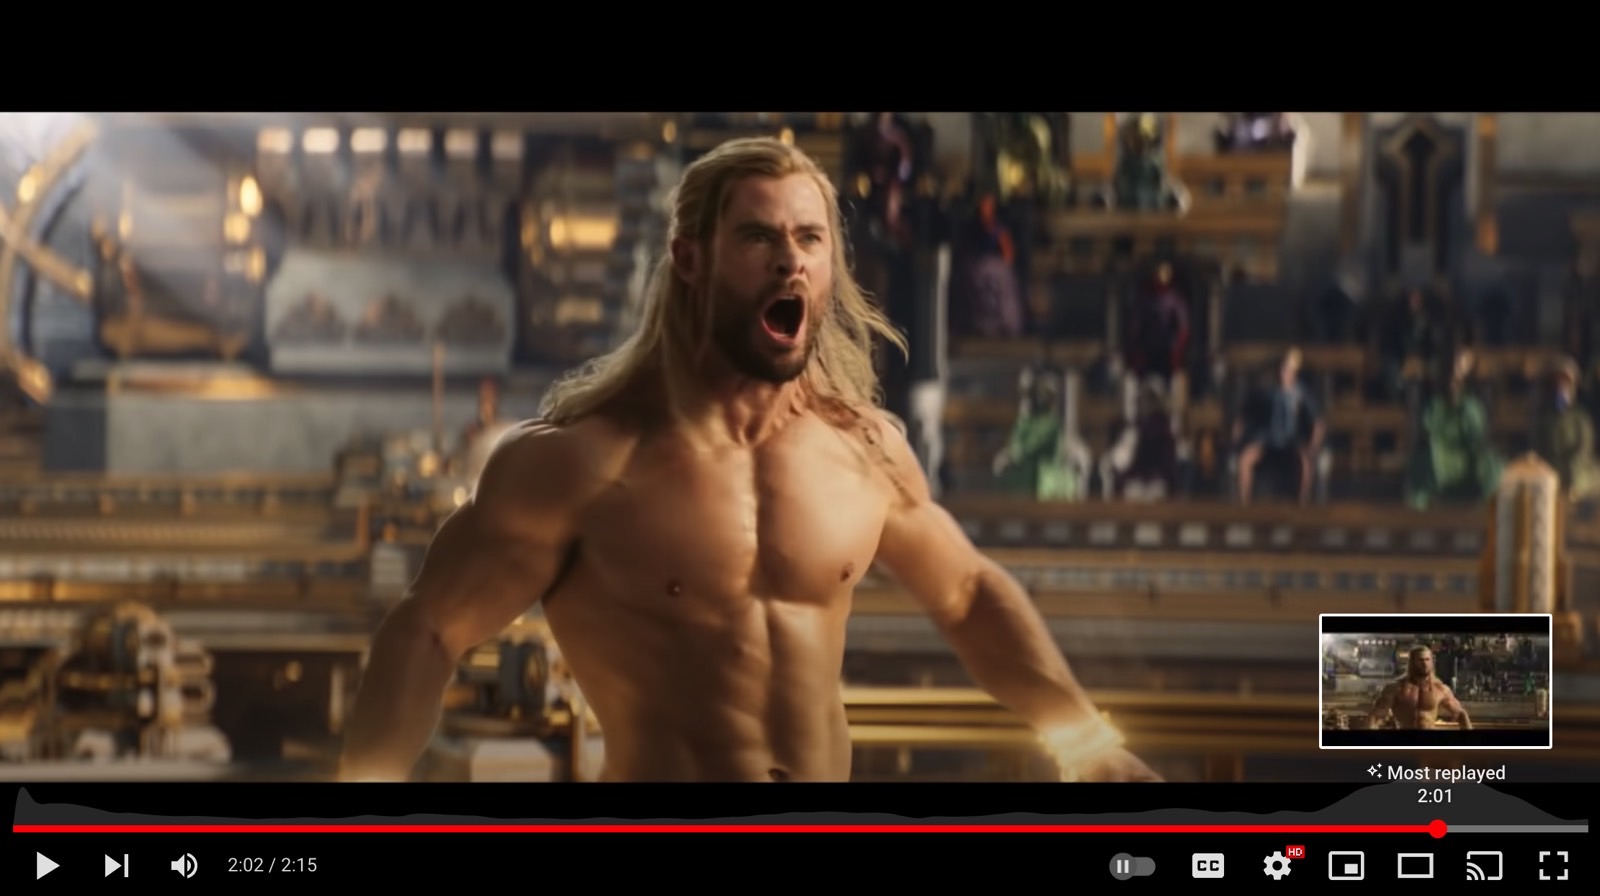 Naked Thor (Chris Hemsworth) in Love and Thunder trailer 2.